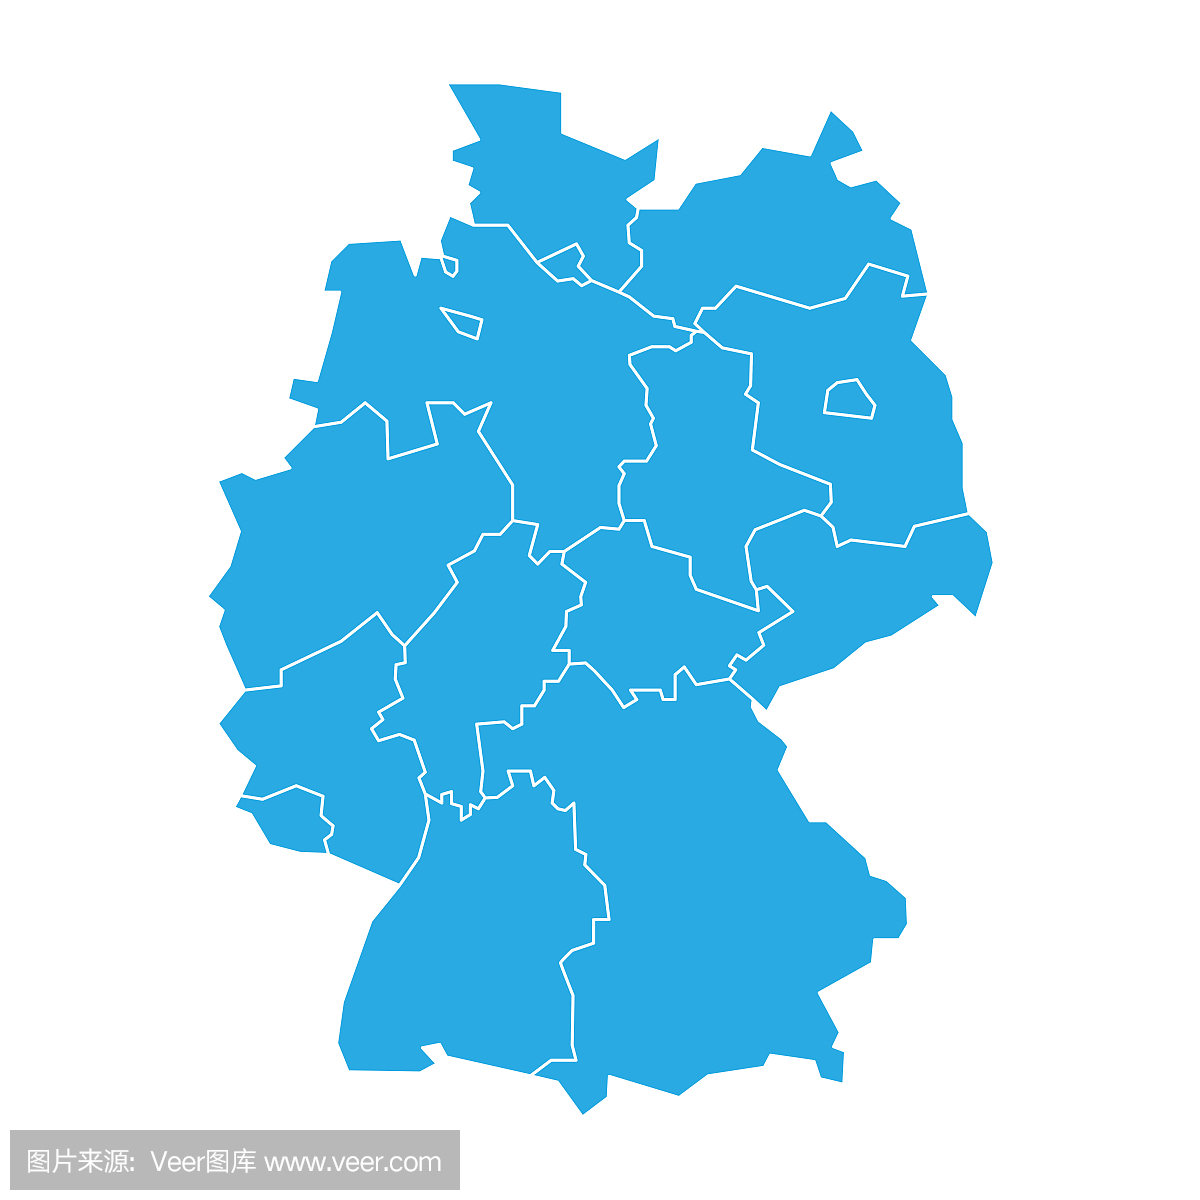 德国城市中文版全图,德国地图高清版可放大(4) - 伤感说说吧